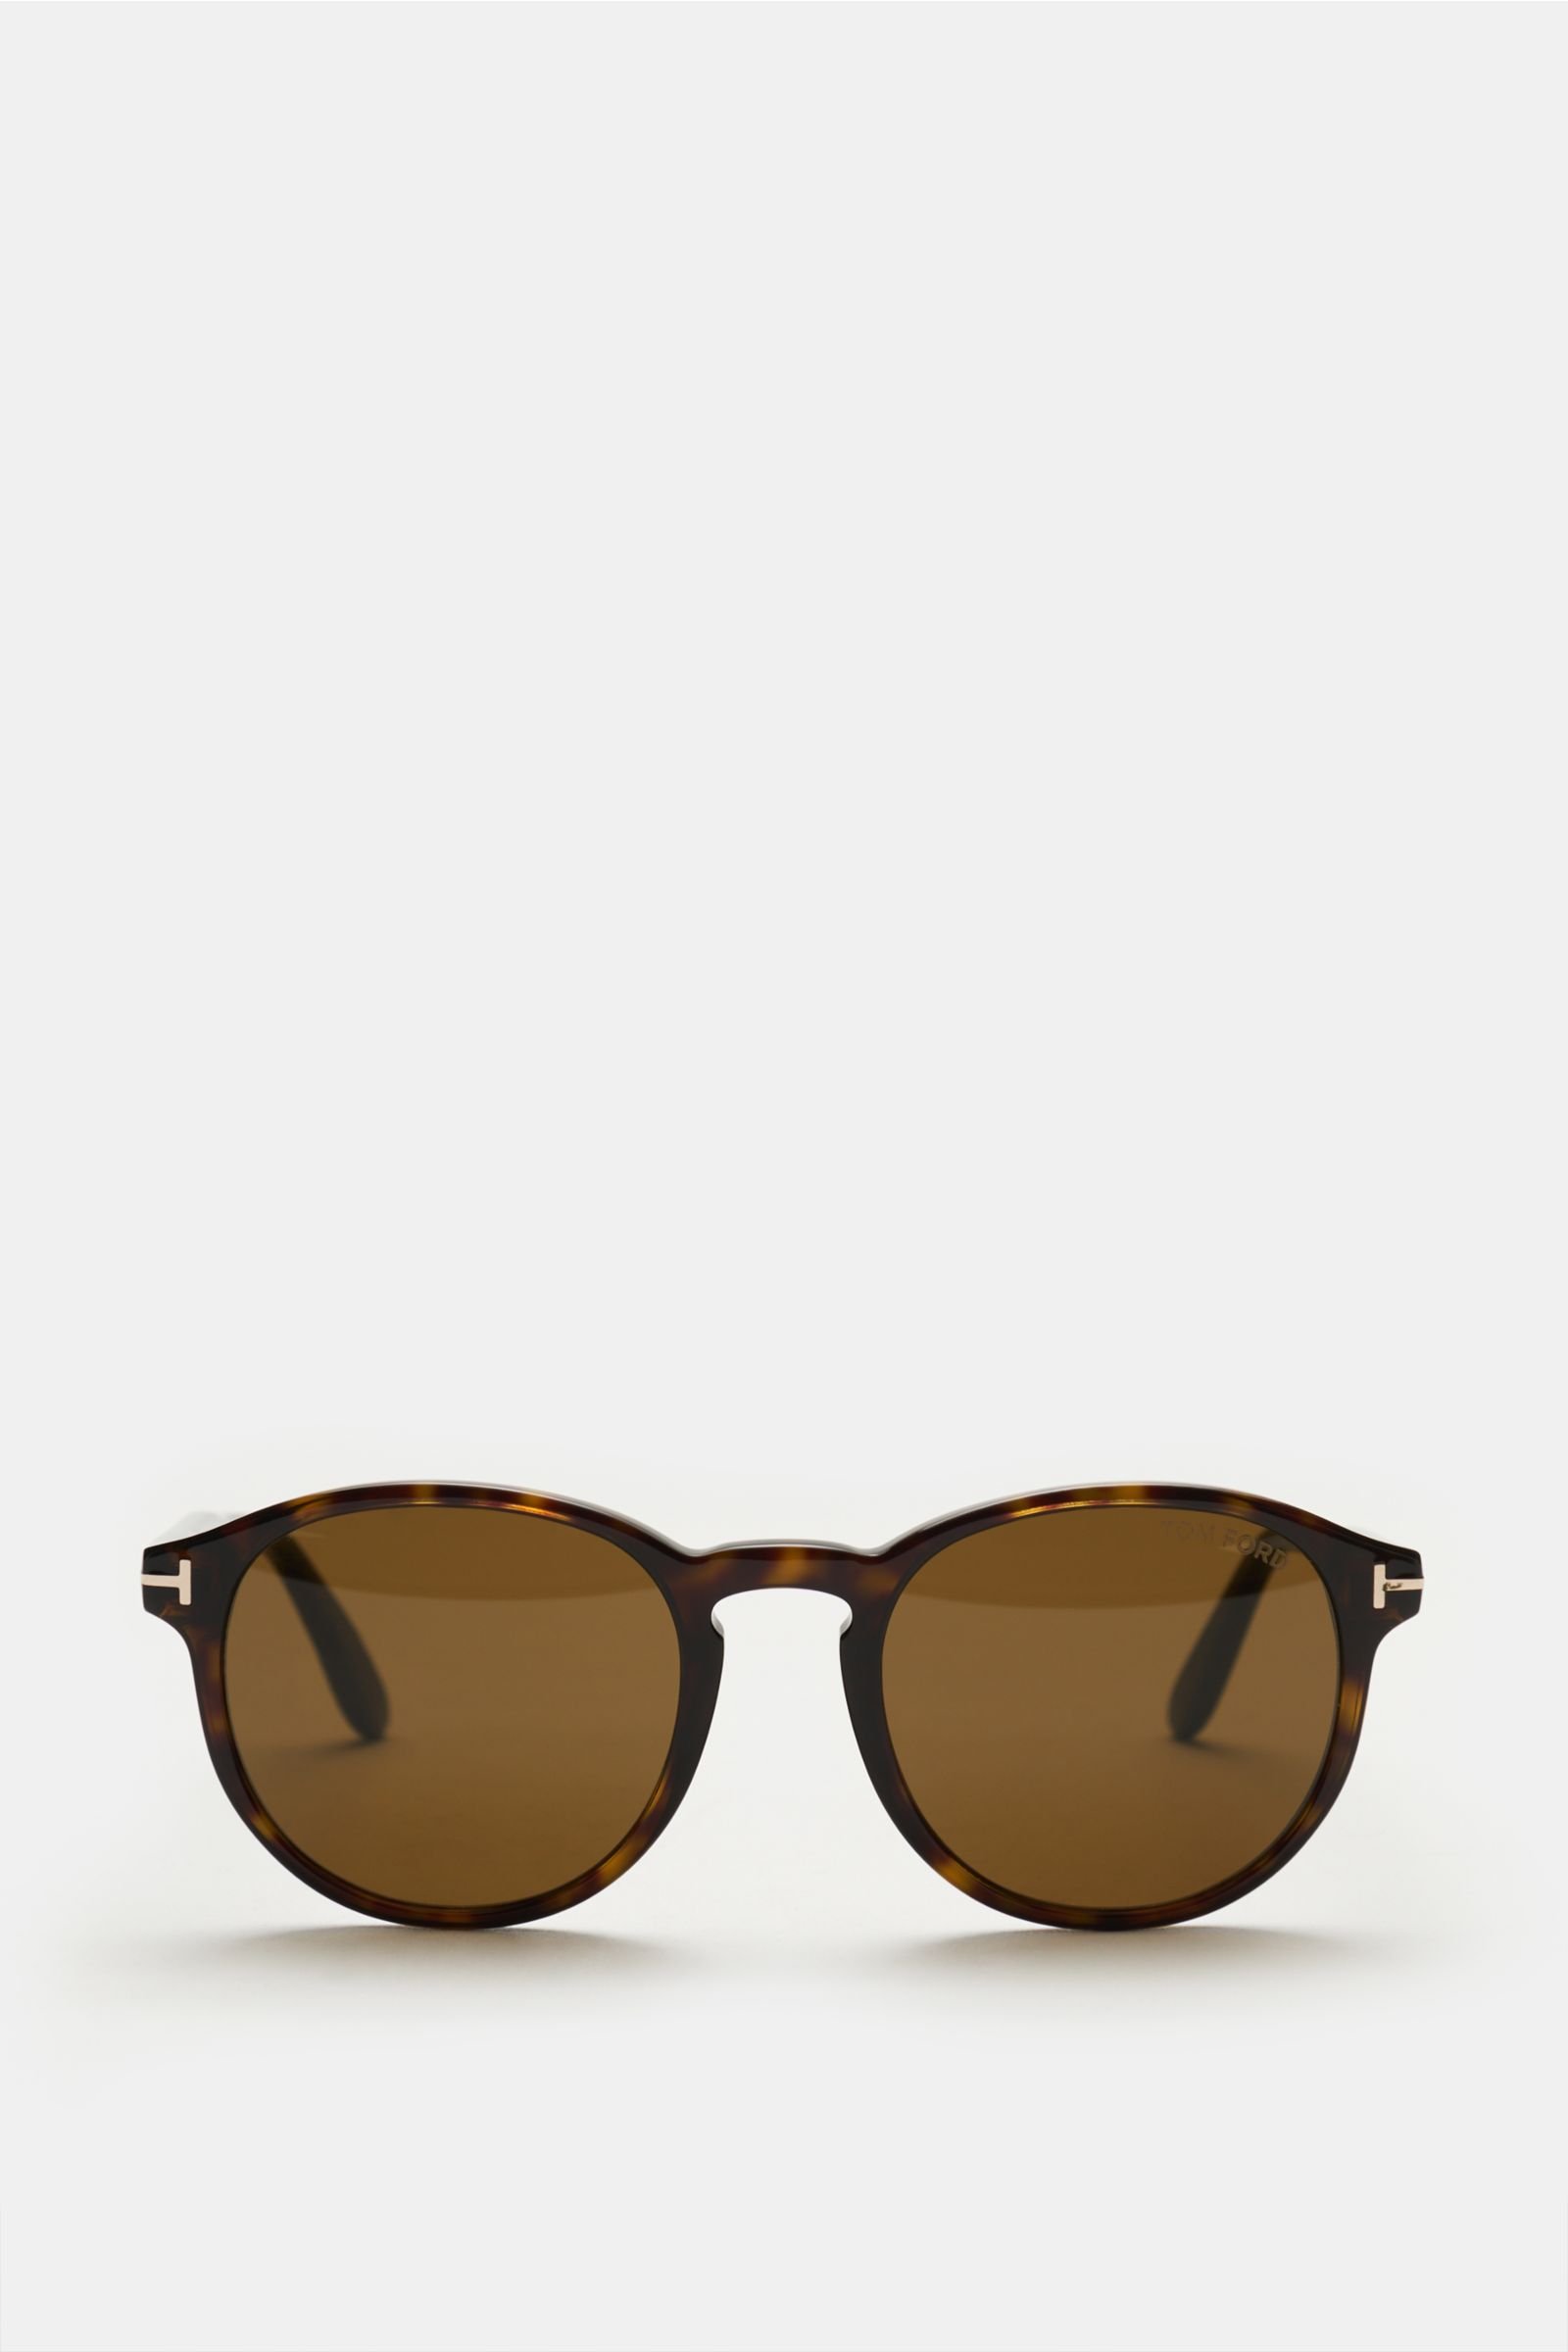 Sunglasses 'Dante' dark brown/brown